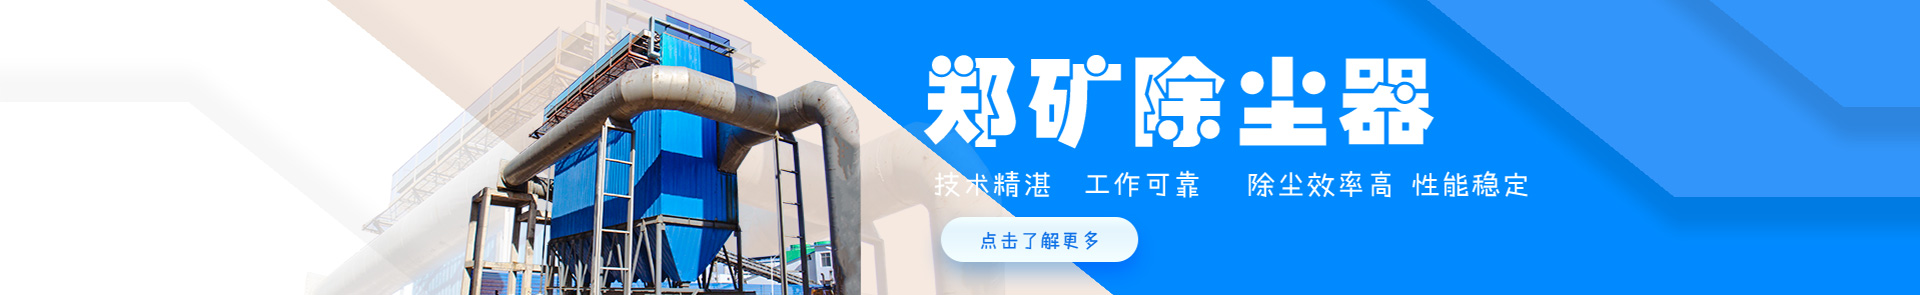 【48812】广西中烟工业有限责任公司柳州卷烟厂线）（项目编号：GXDYZB24-029）投标成果公告